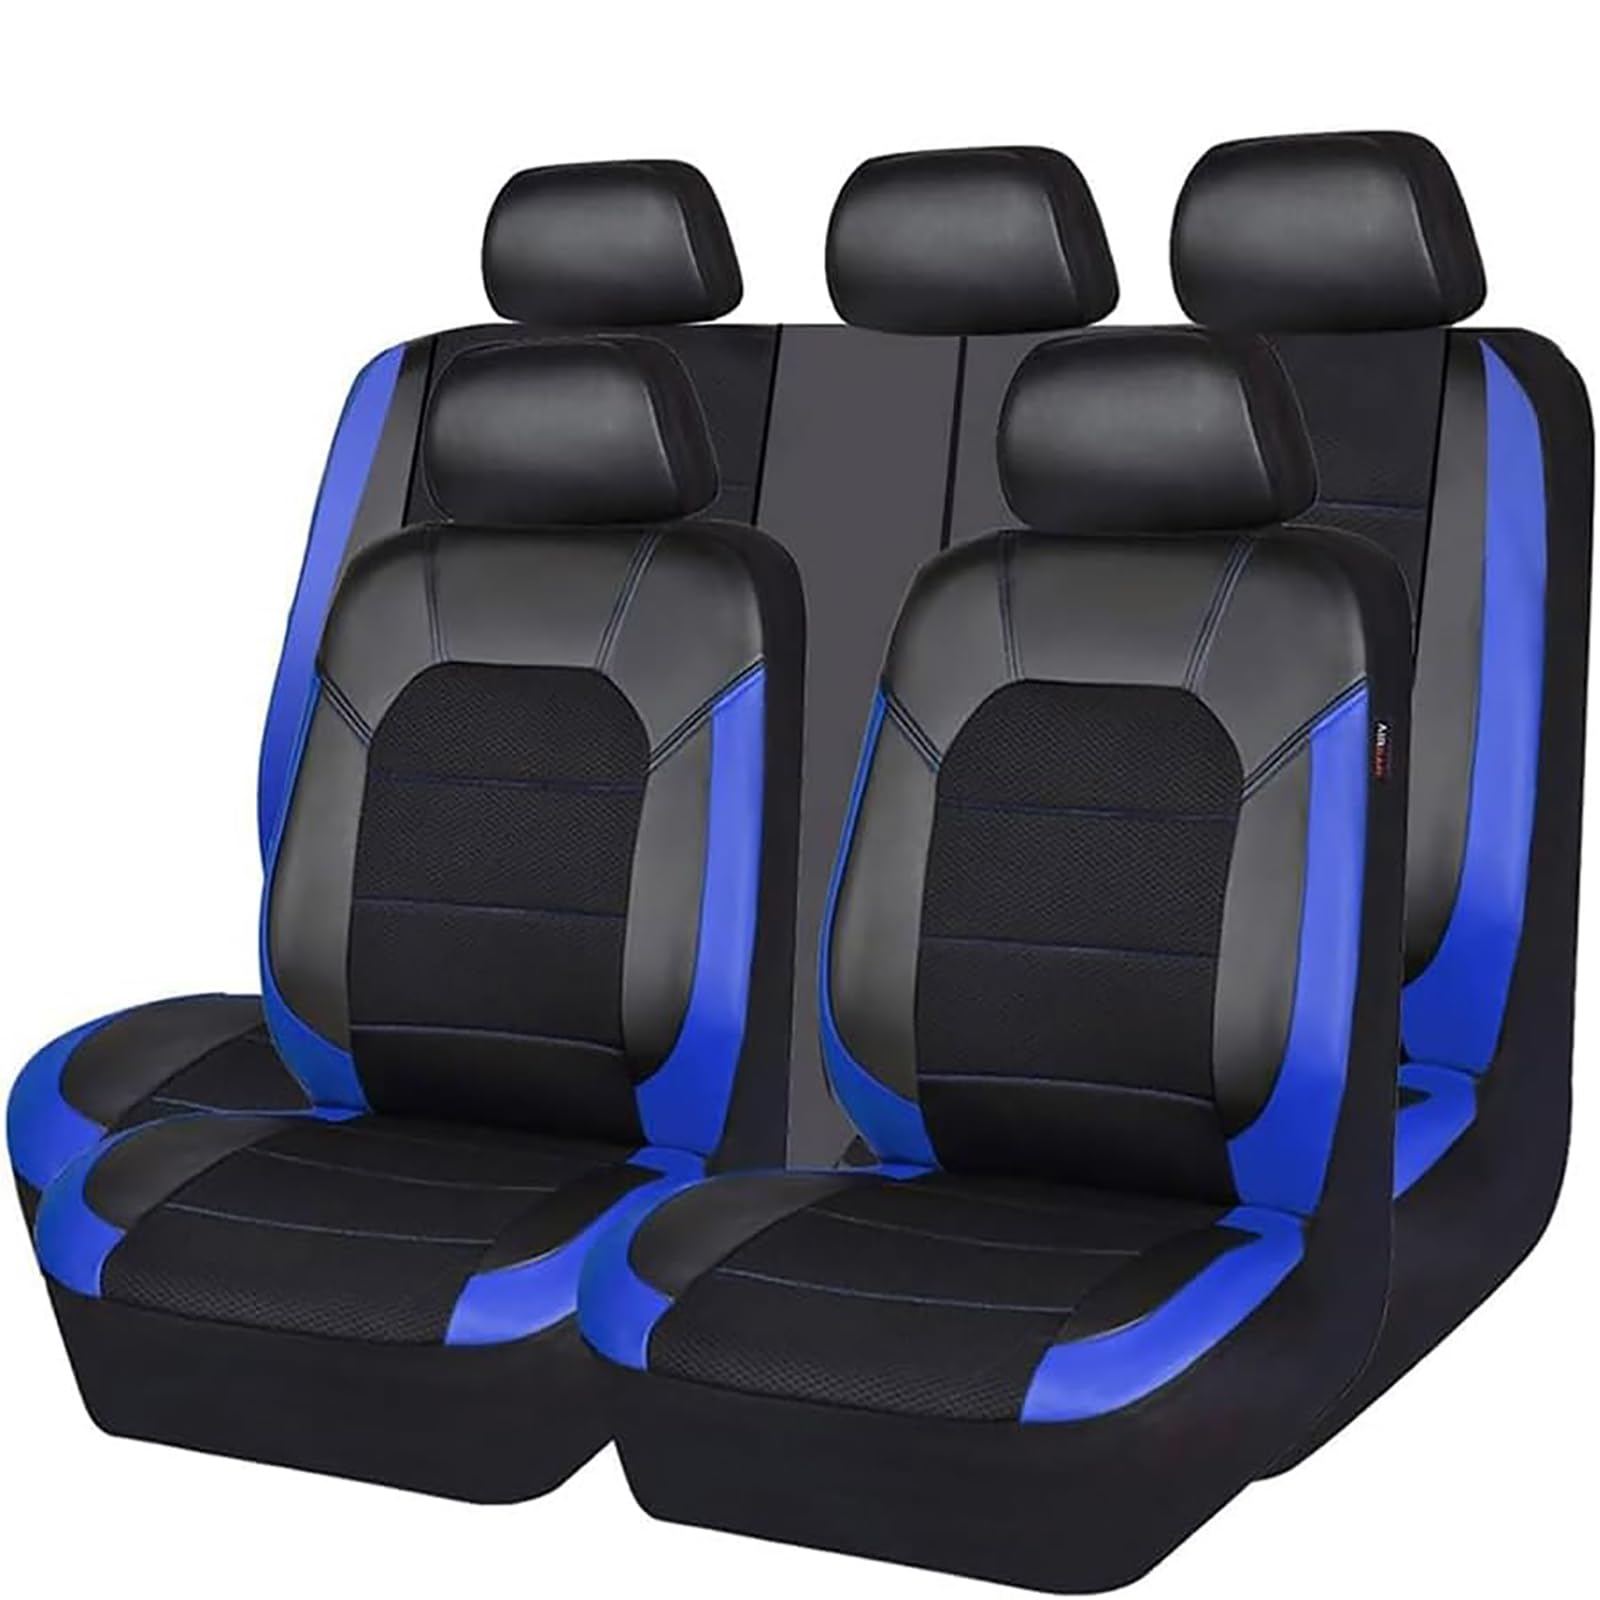 EYHQKRTR Auto Leder Sitzkissen Für Jeep Cherokee KL 2014-2017, 5 Sitzer Full Set SitzbezüGe Schonbezug Vorne Rückbank Sitzschutz Compatible Airbag Innenraum Zubehör,C/Blue von EYHQKRTR